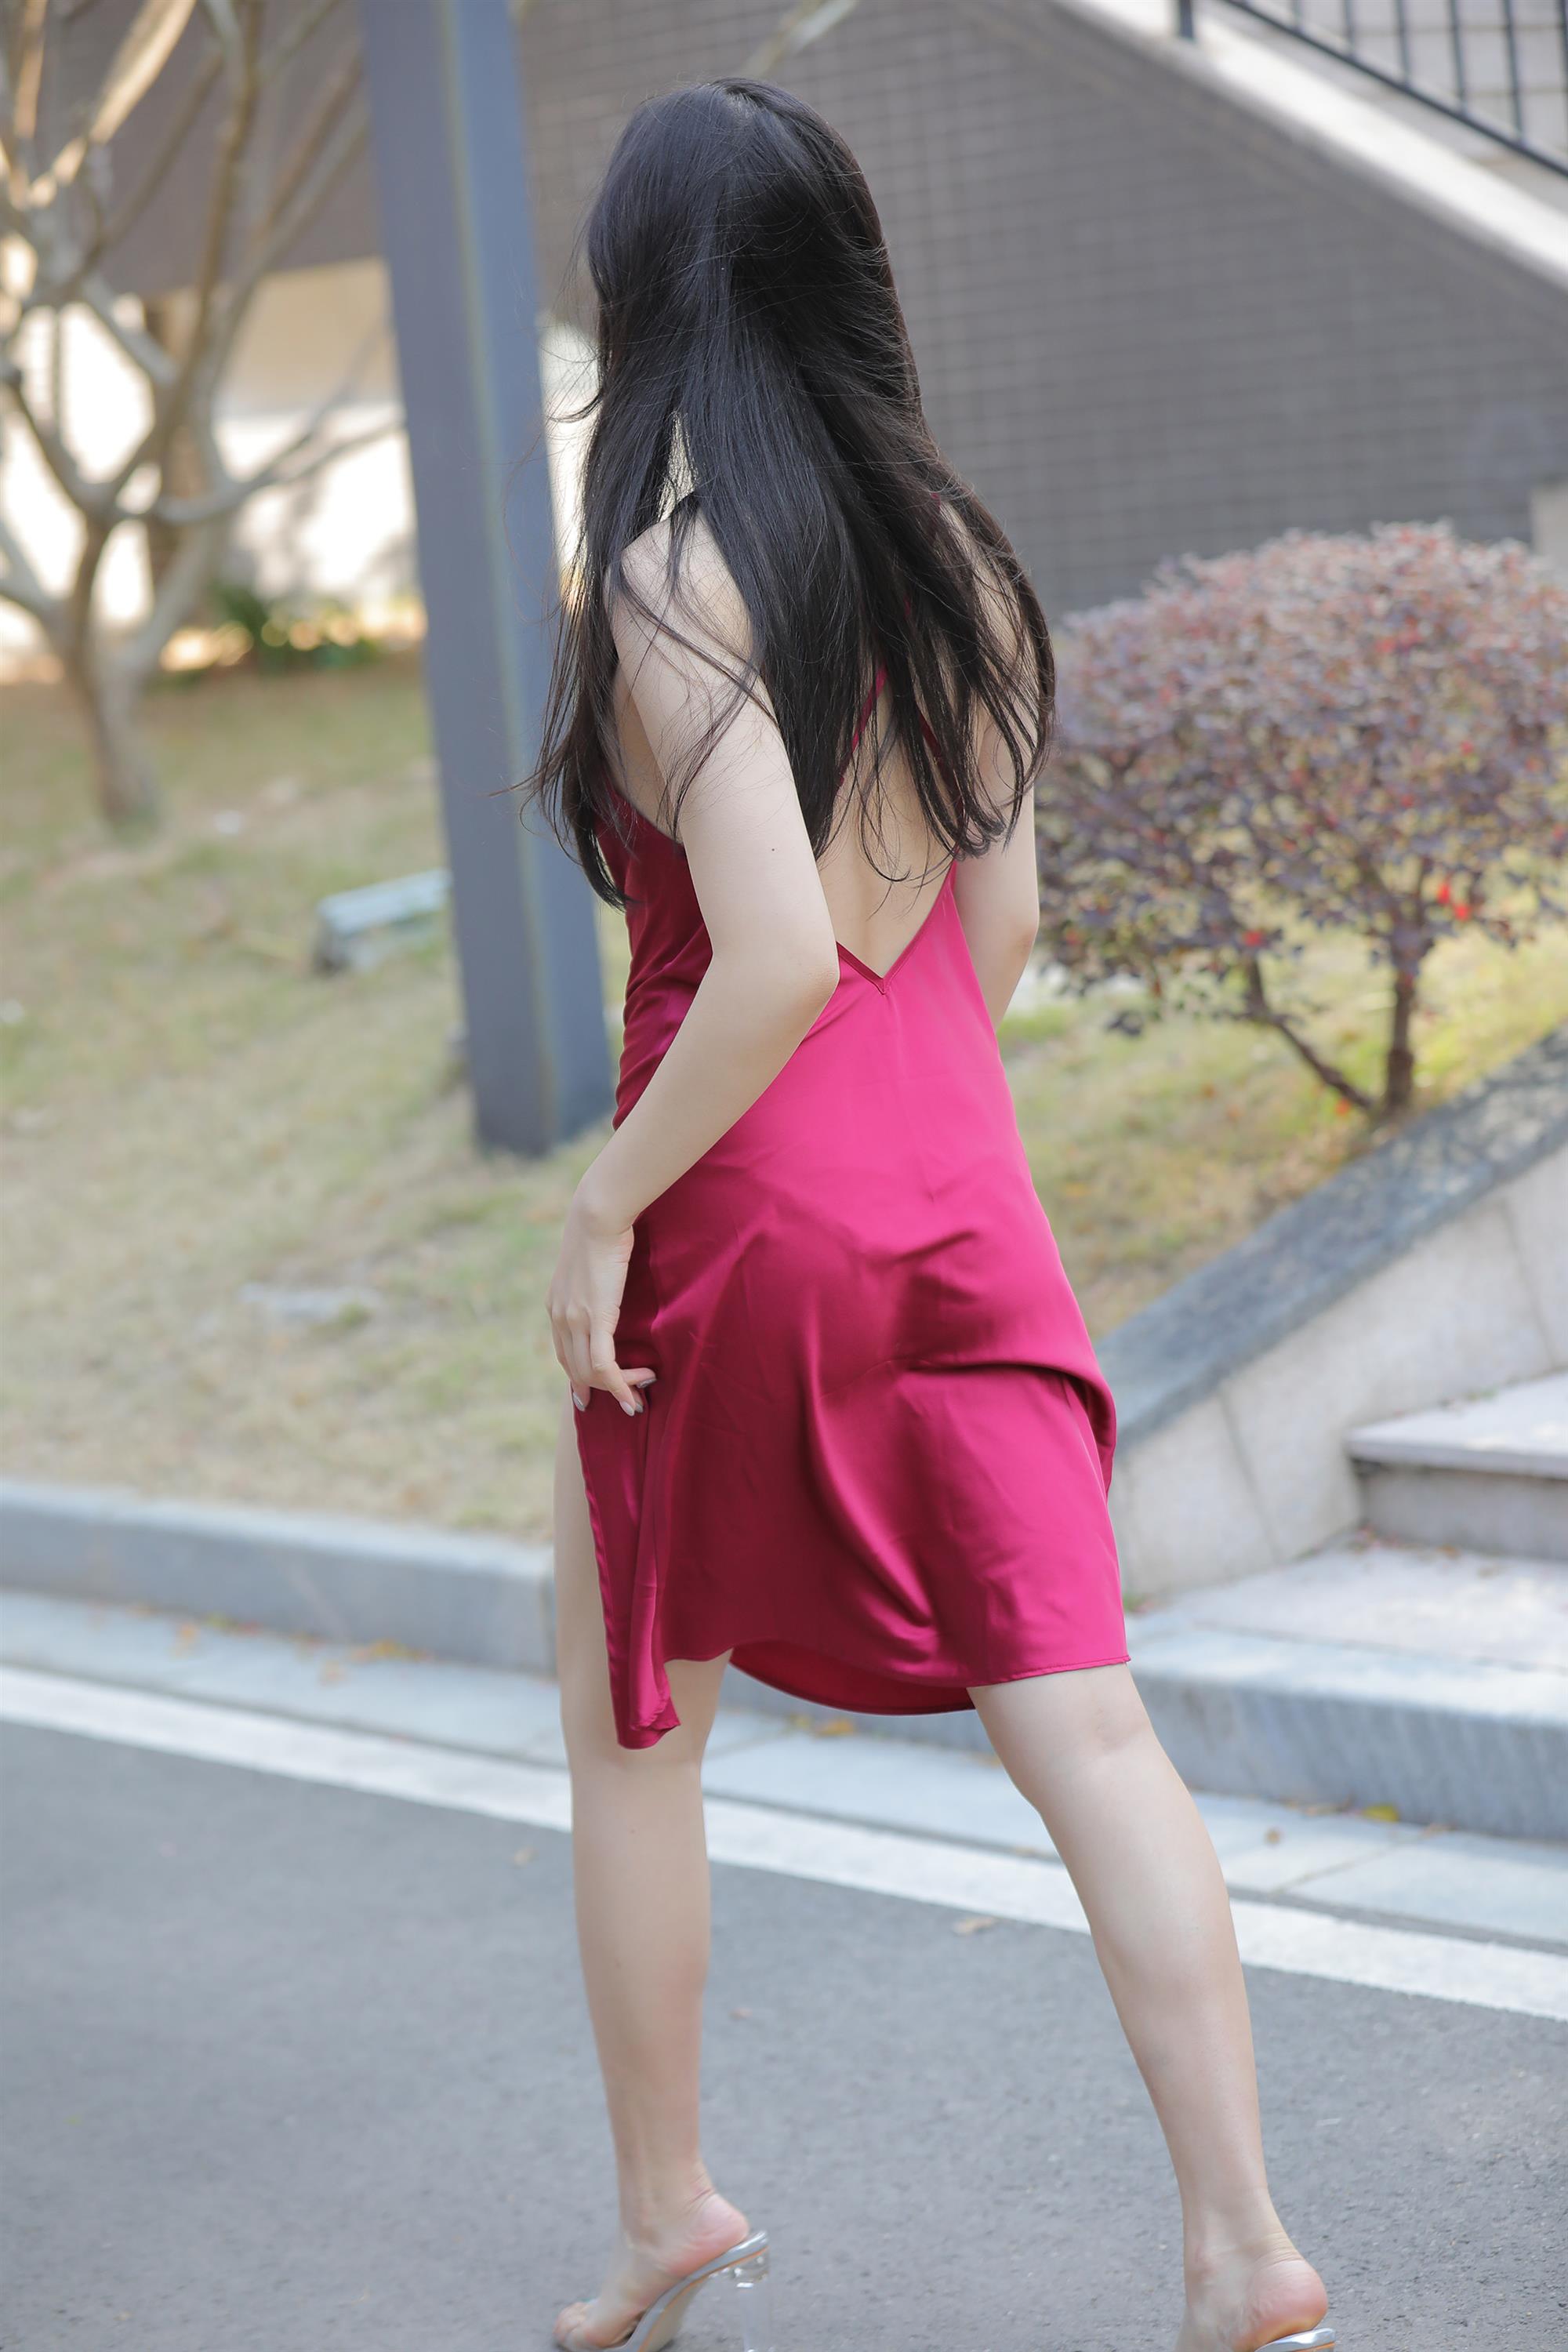 Street beauty in a red dress - 84.jpg